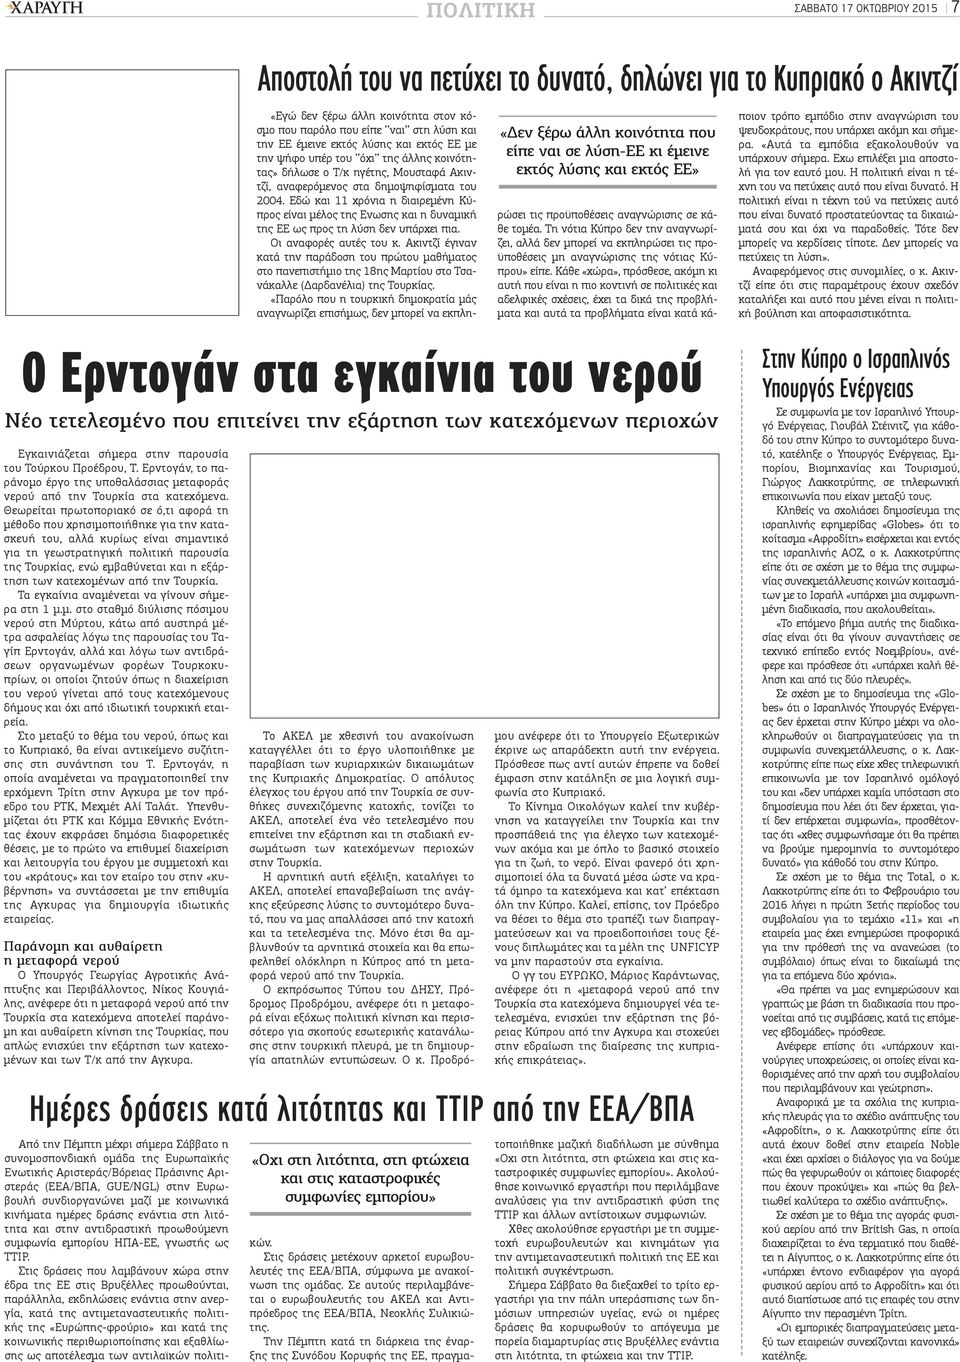 αναφερόμενος στα δημοψηφίσματα του 2004. Εδώ και 11 χρόνια η διαιρεμένη Κύπρος είναι μέλος της Ενωσης και η δυναμική της ΕΕ ως προς τη λύση δεν υπάρχει πια. Οι αναφορές αυτές του κ.